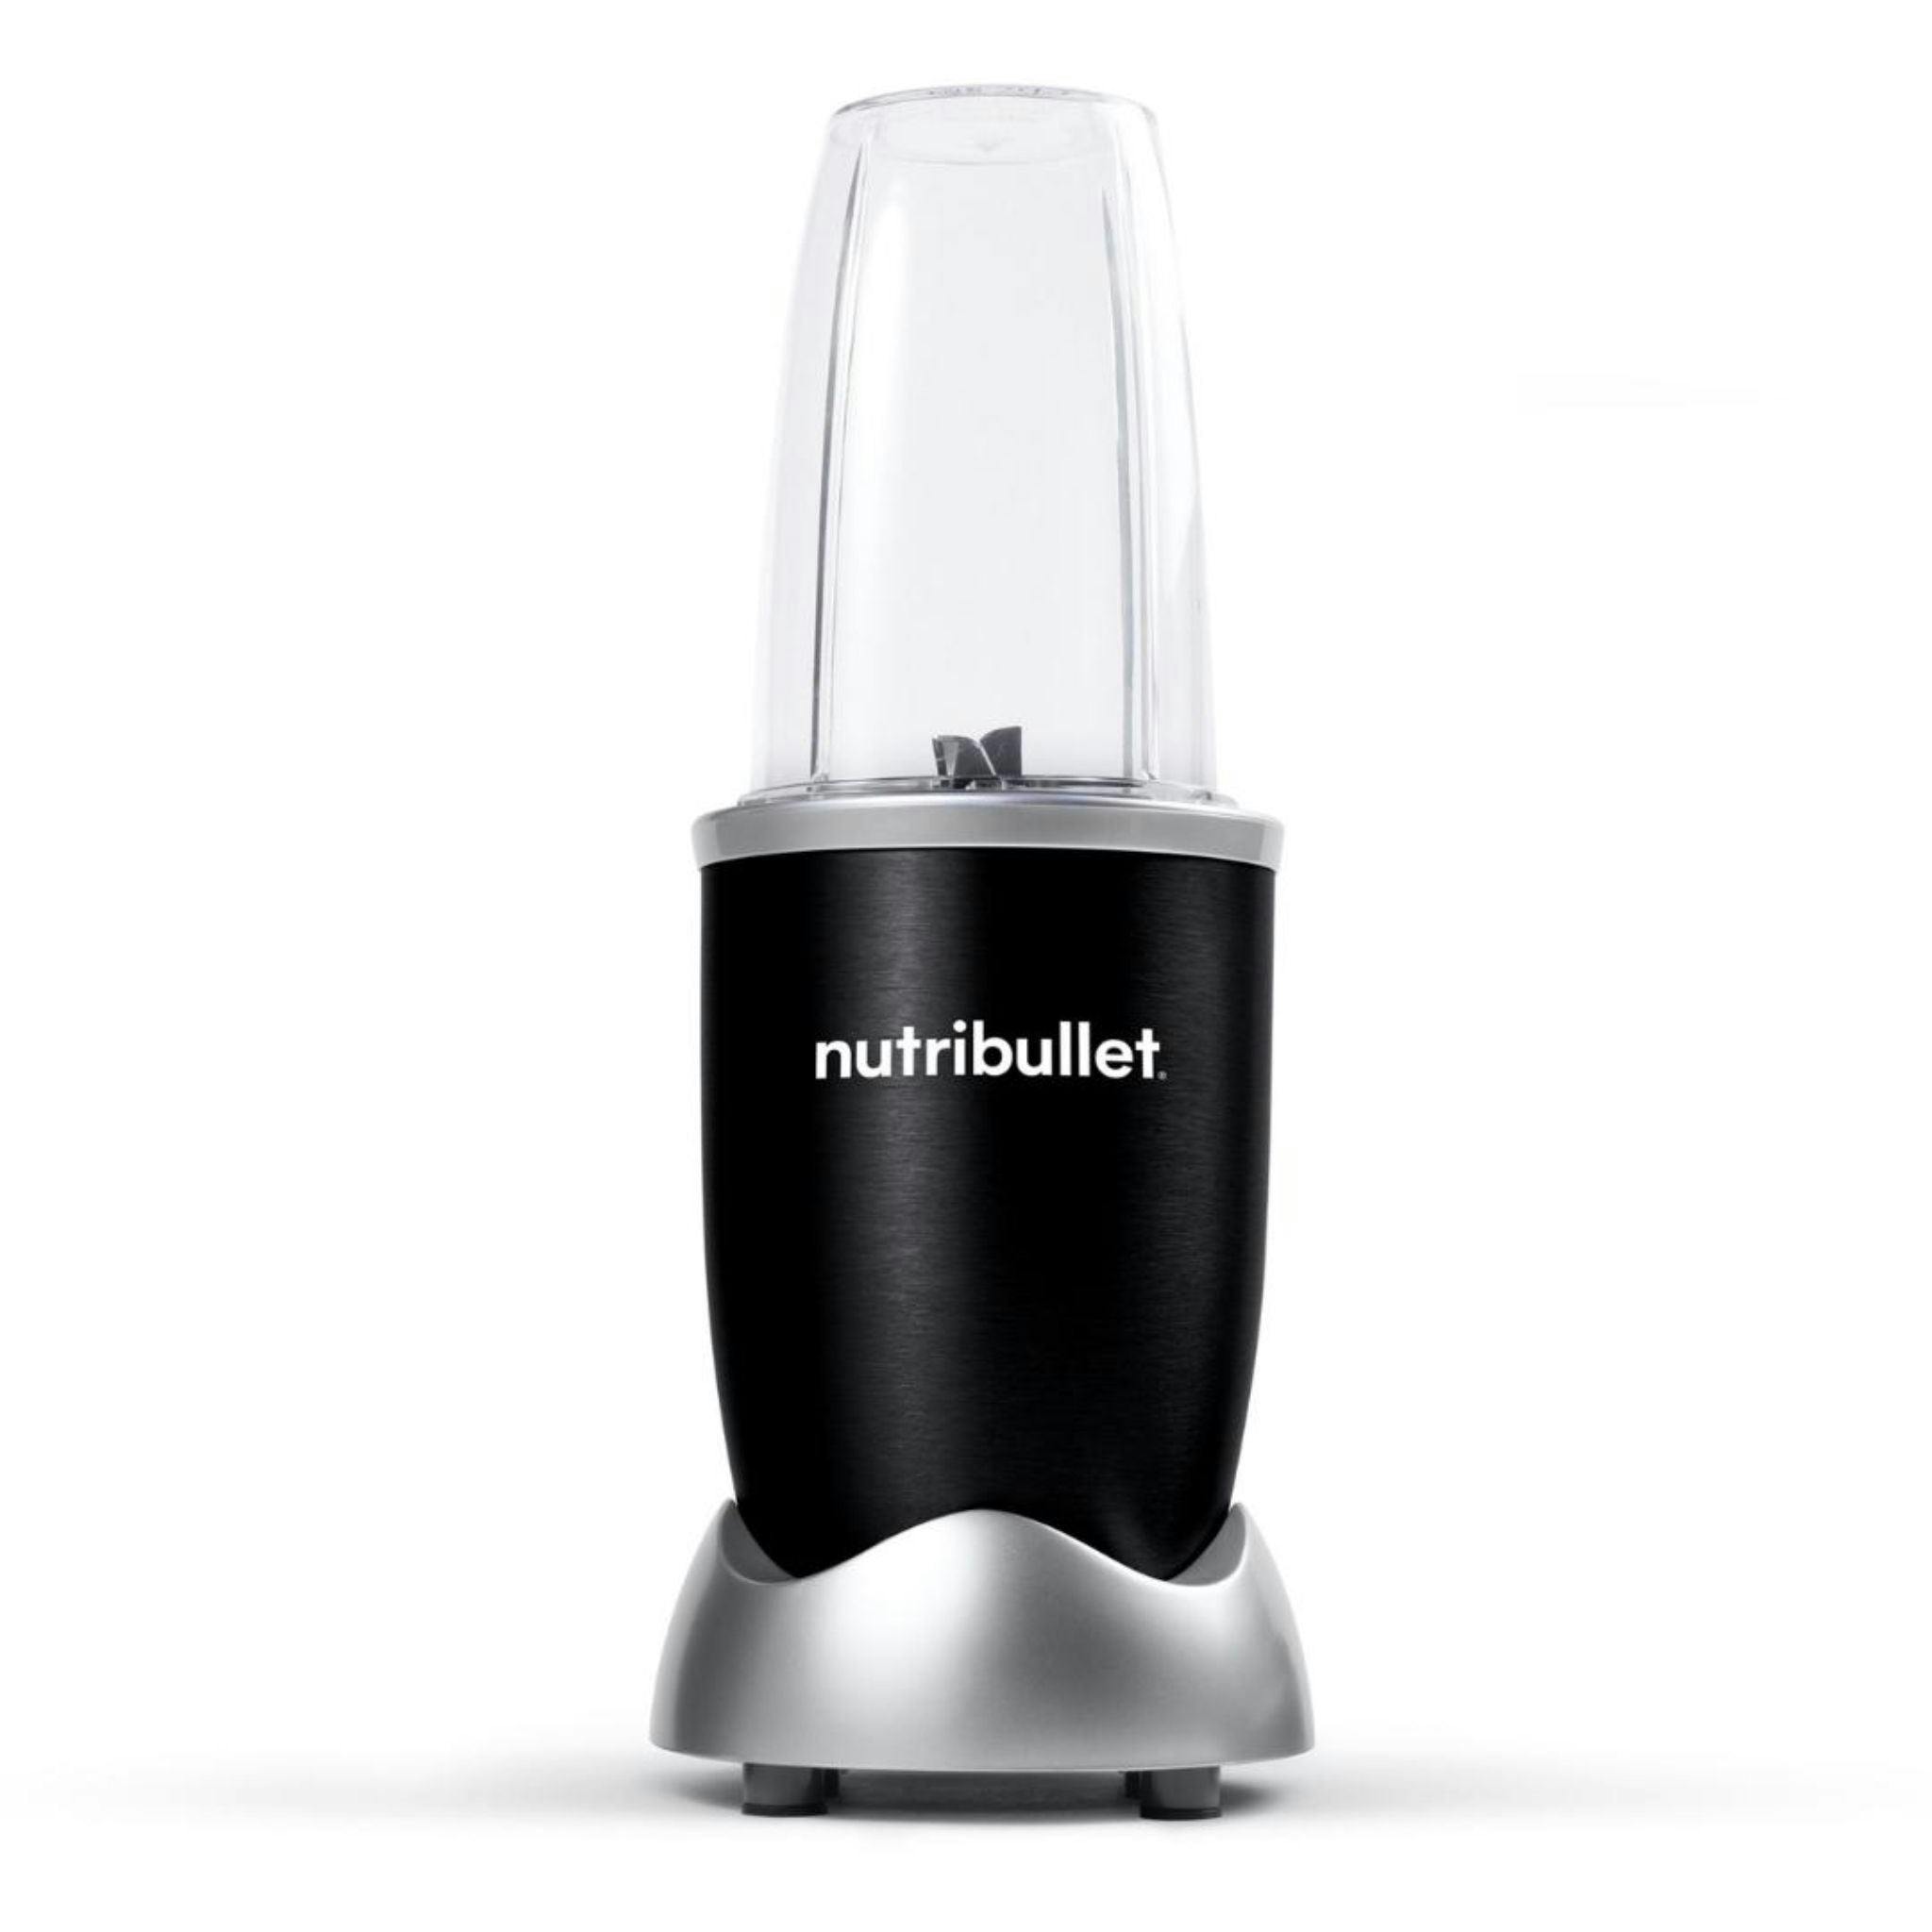 NutriBullet 600W Personal Blender - Metallic Black, NutriBullet